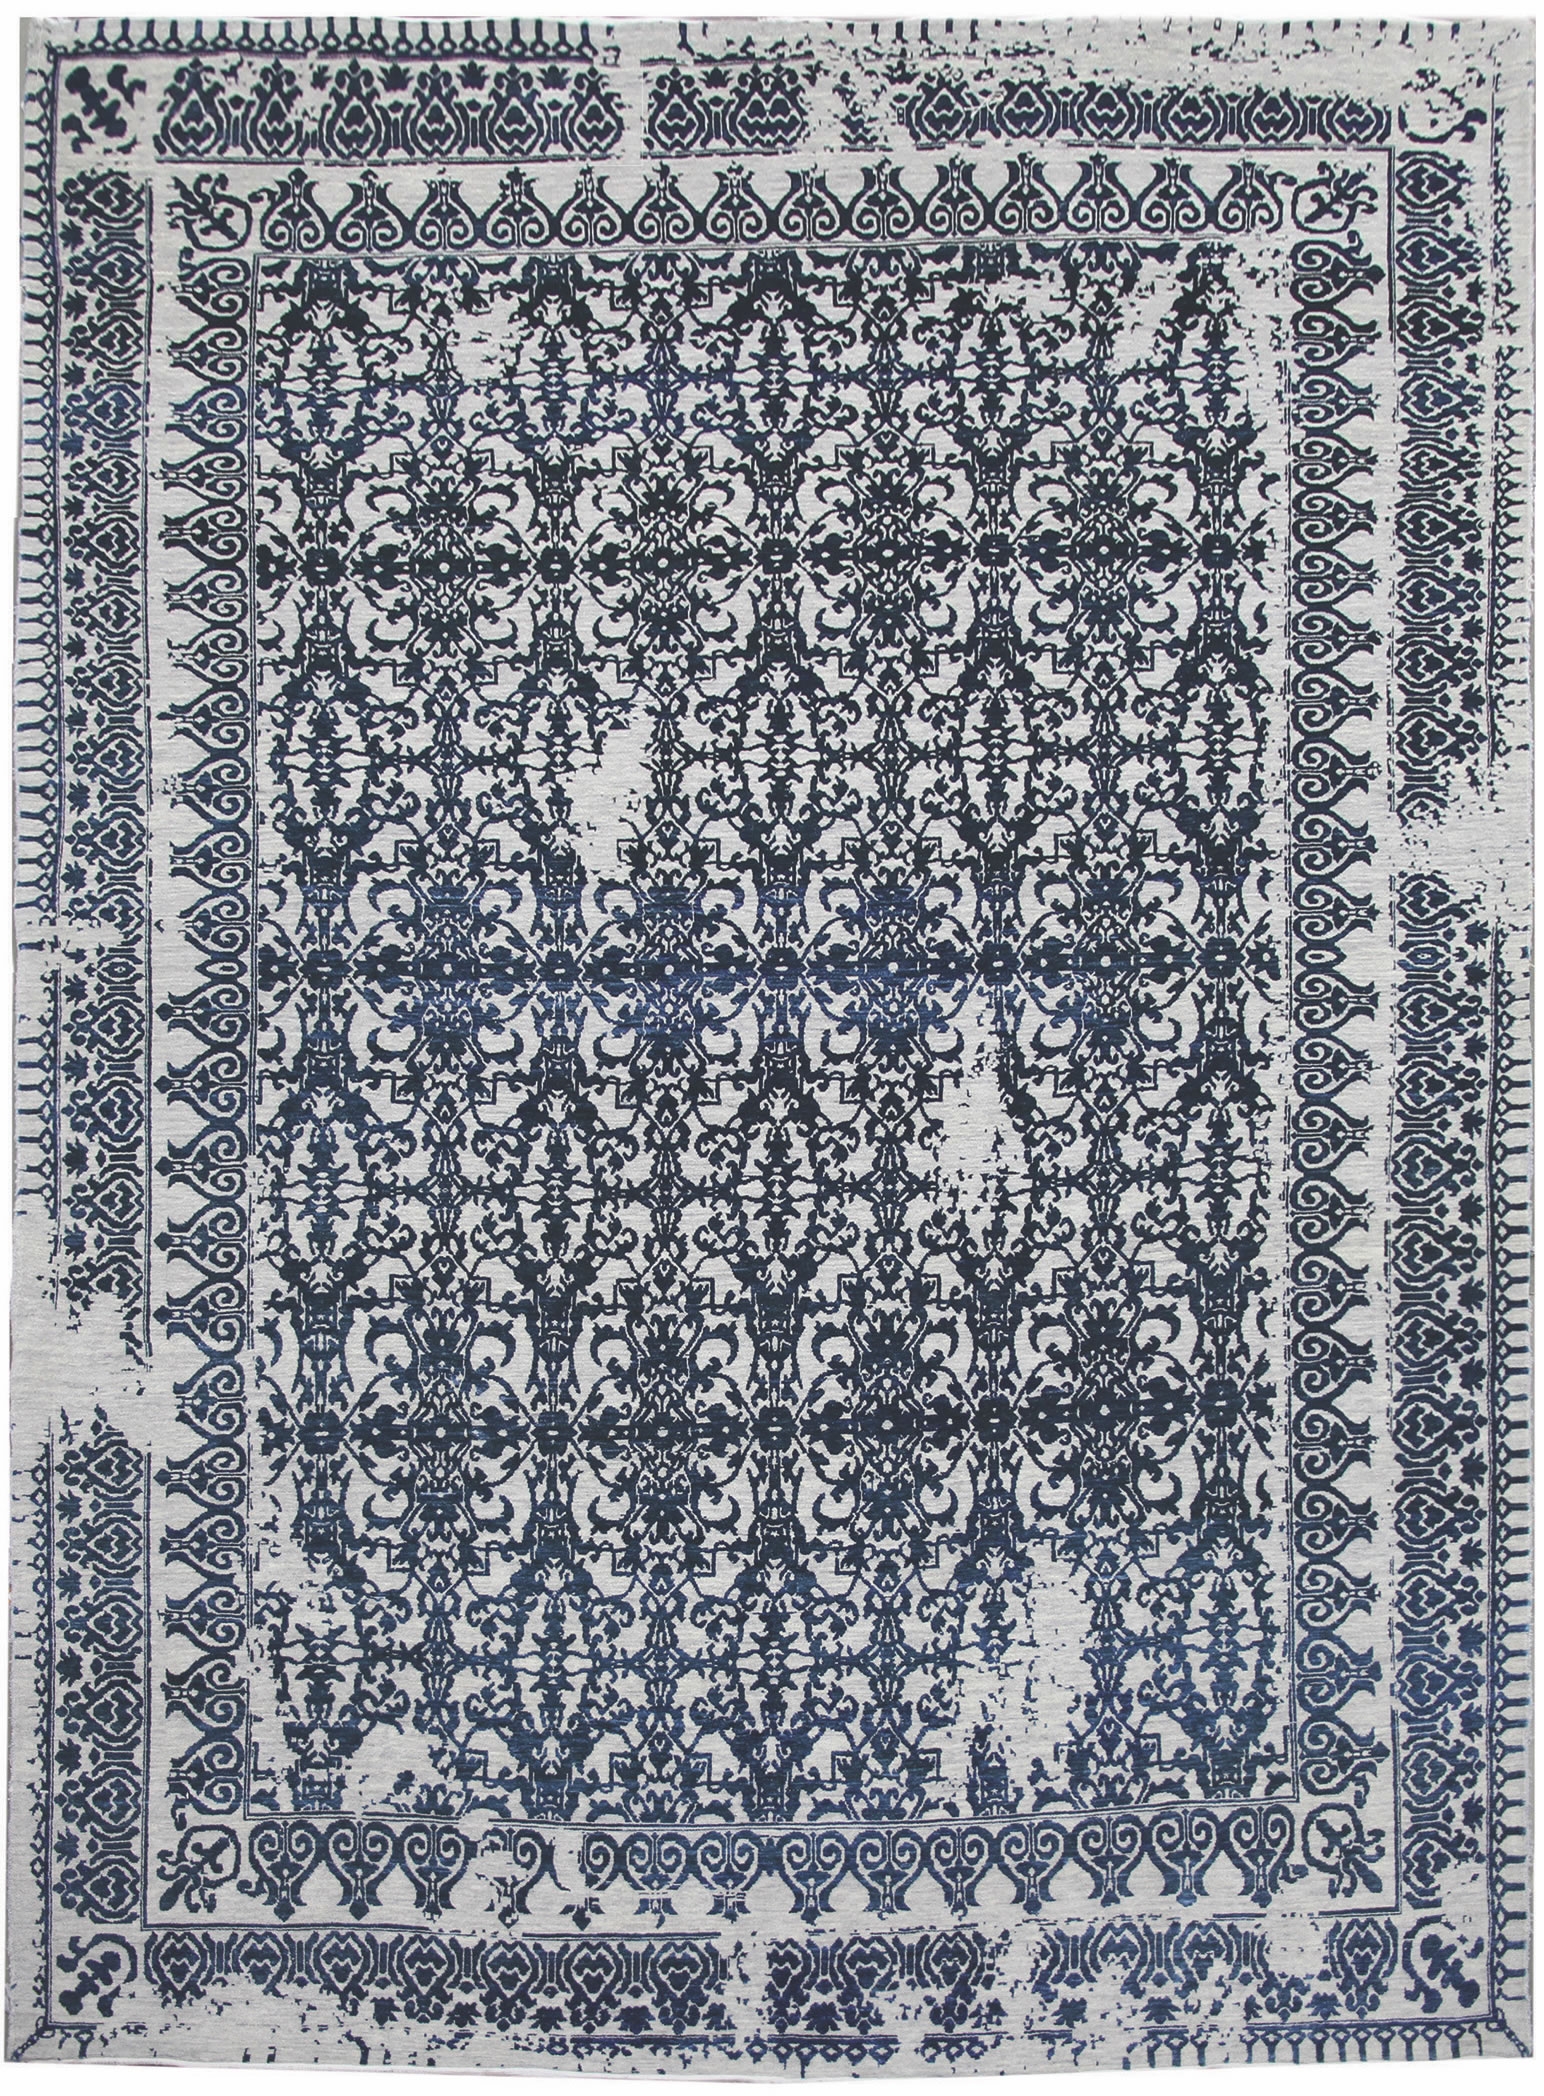 Ručne viazaný kusový koberec Diamond DC-JK 7 Silver / denim - 275x365 cm Diamond Carpets koberce 